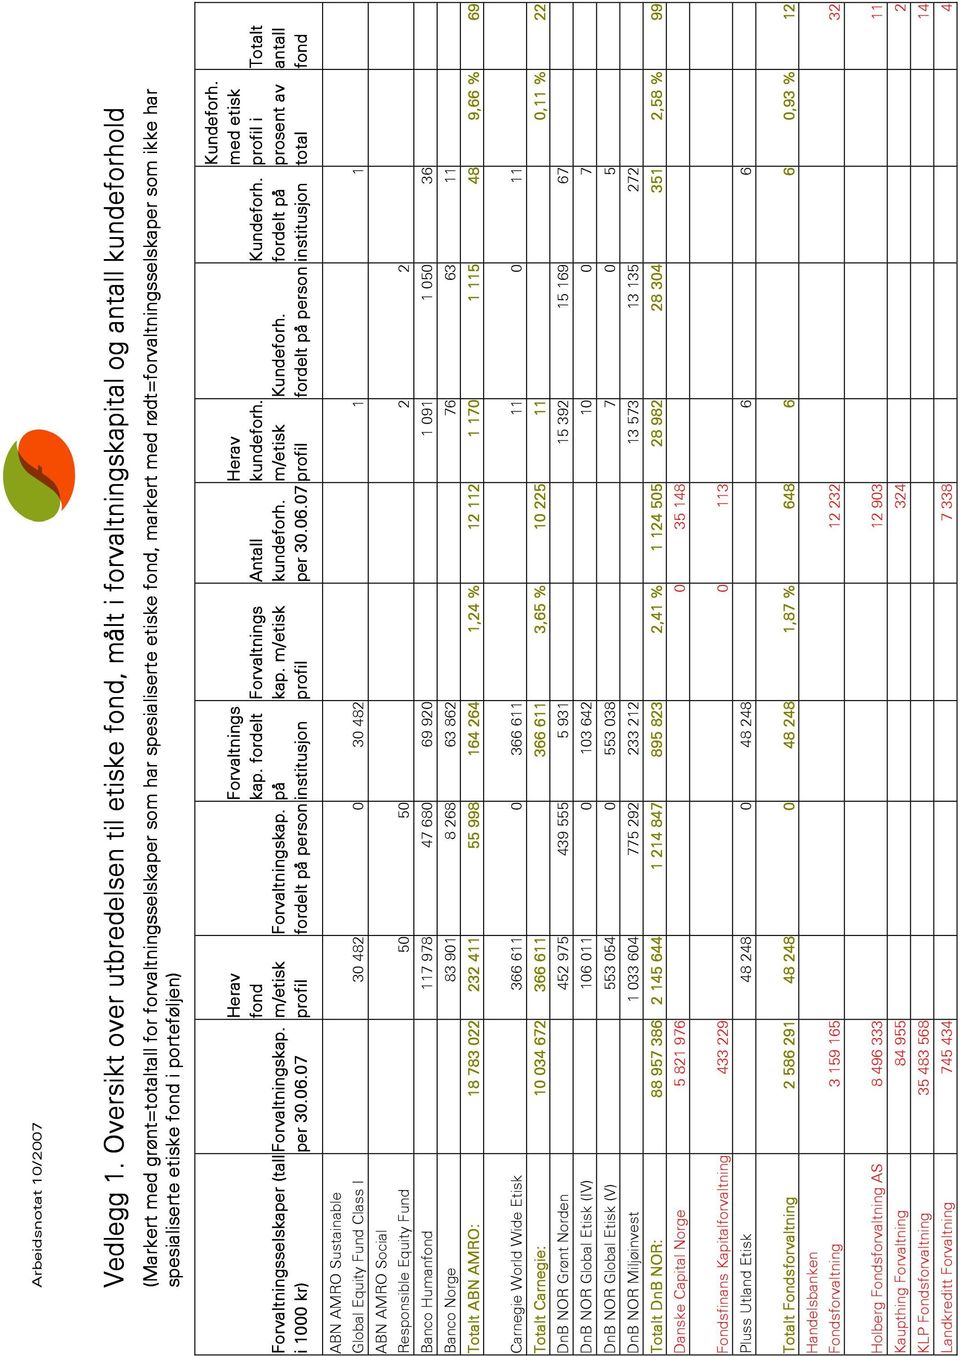 rødt=forvaltningsselskaper som ikke har spesialiserte etiske fond i porteføljen) Forvaltningsselskaper (tall i 1000 kr) Forvaltningskap. per 30.06.07 Herav fond m/etisk profil Forvaltningskap.